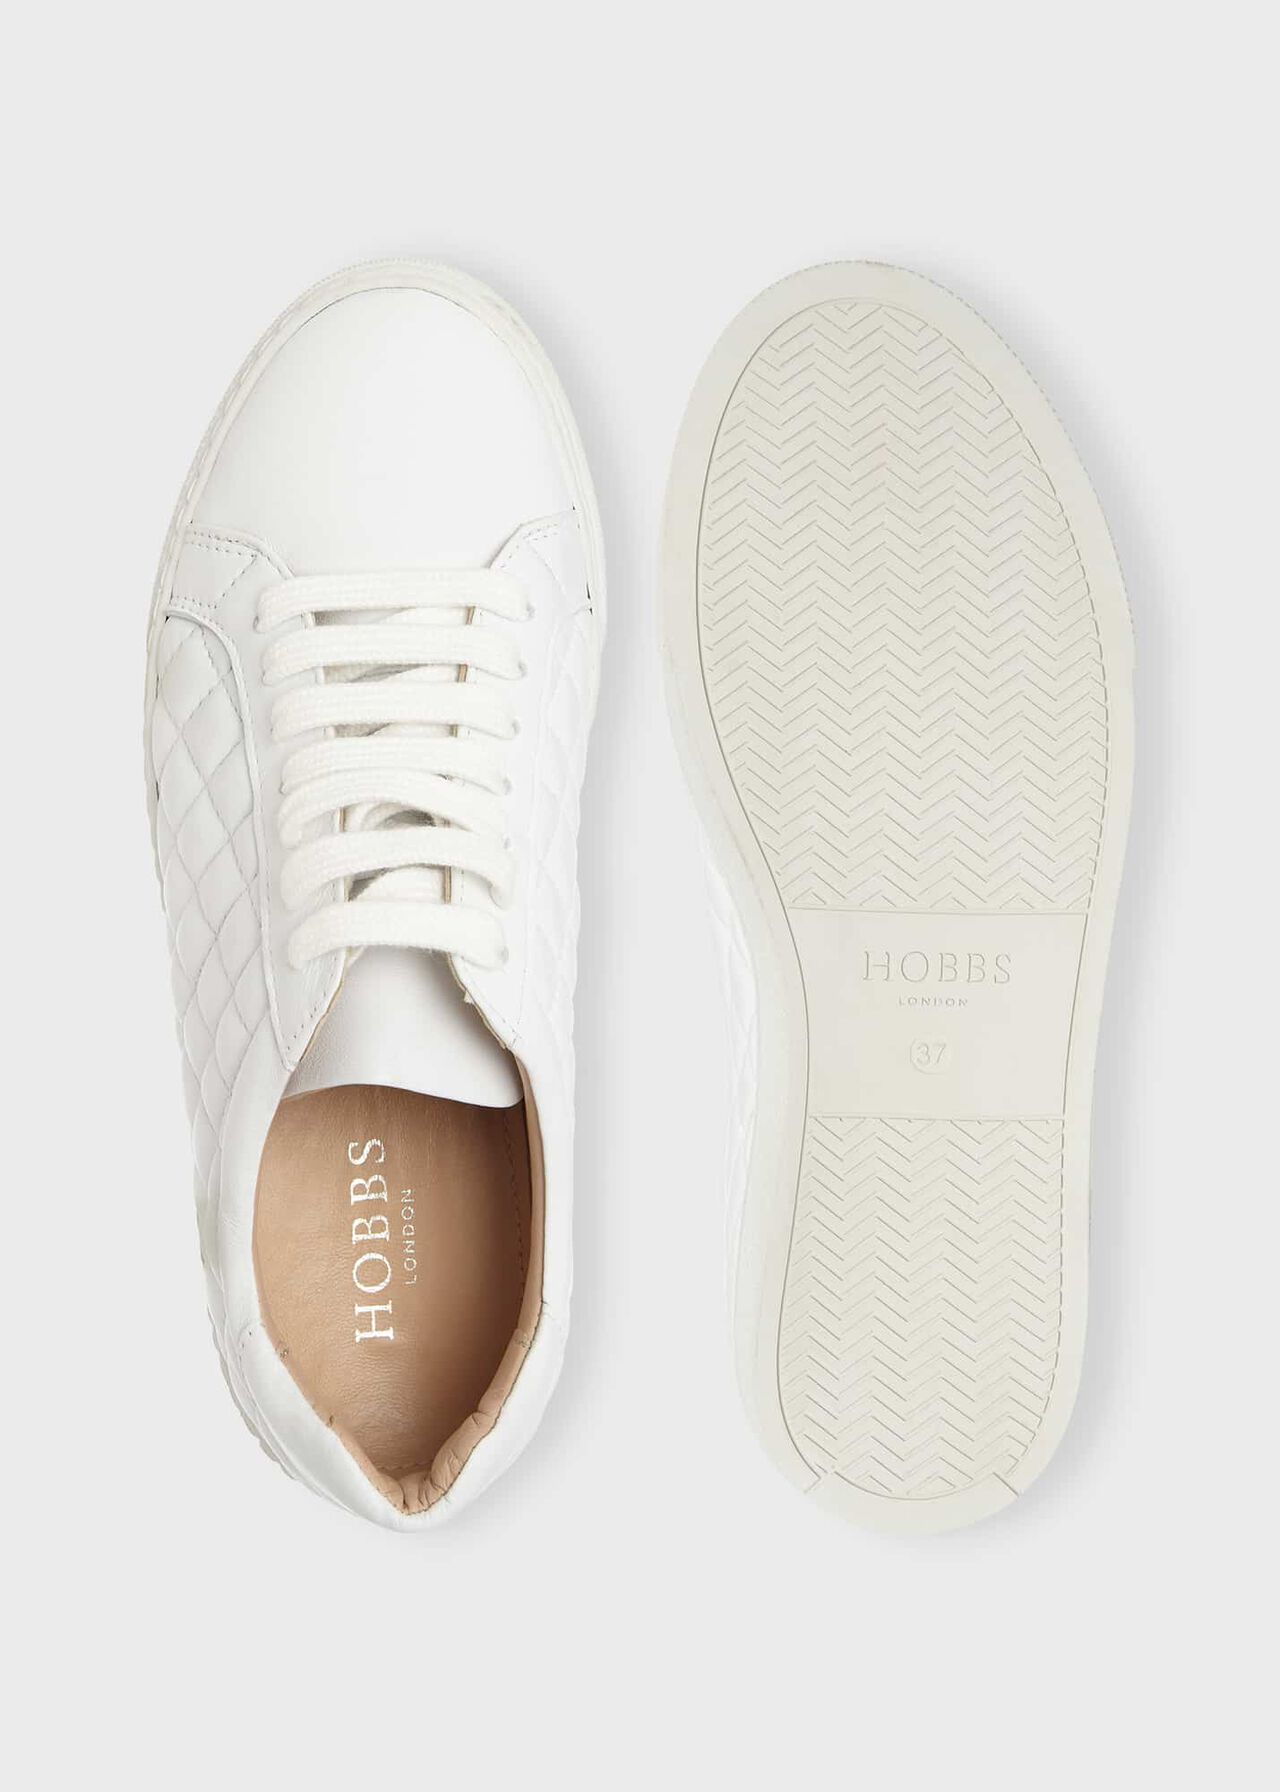 Laurel Sneakers, White, hi-res